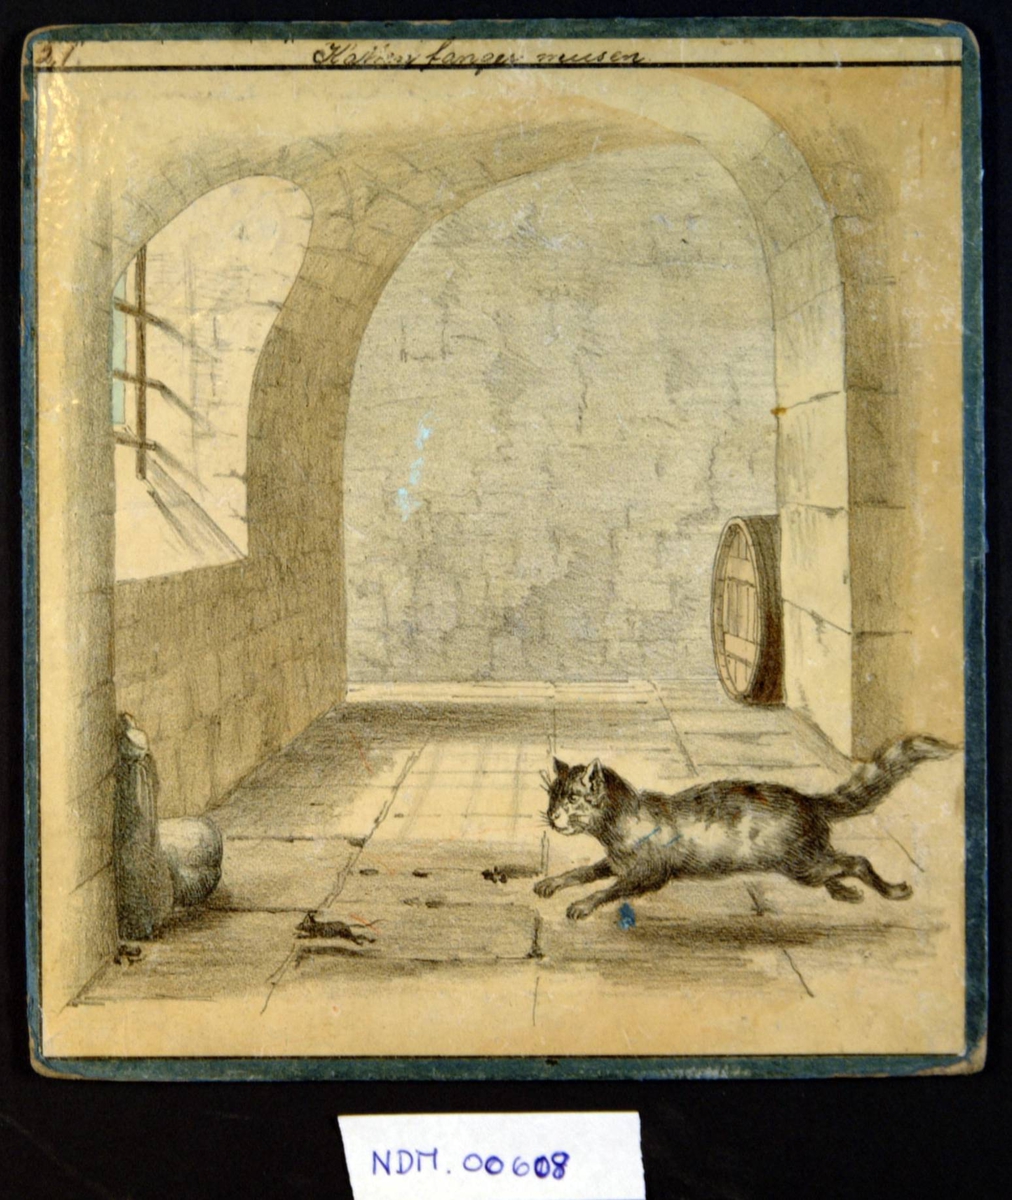 Katt løper etter mus i en hvelvet kjeller, med tykke vegger, vindu med gitter, en tønne.